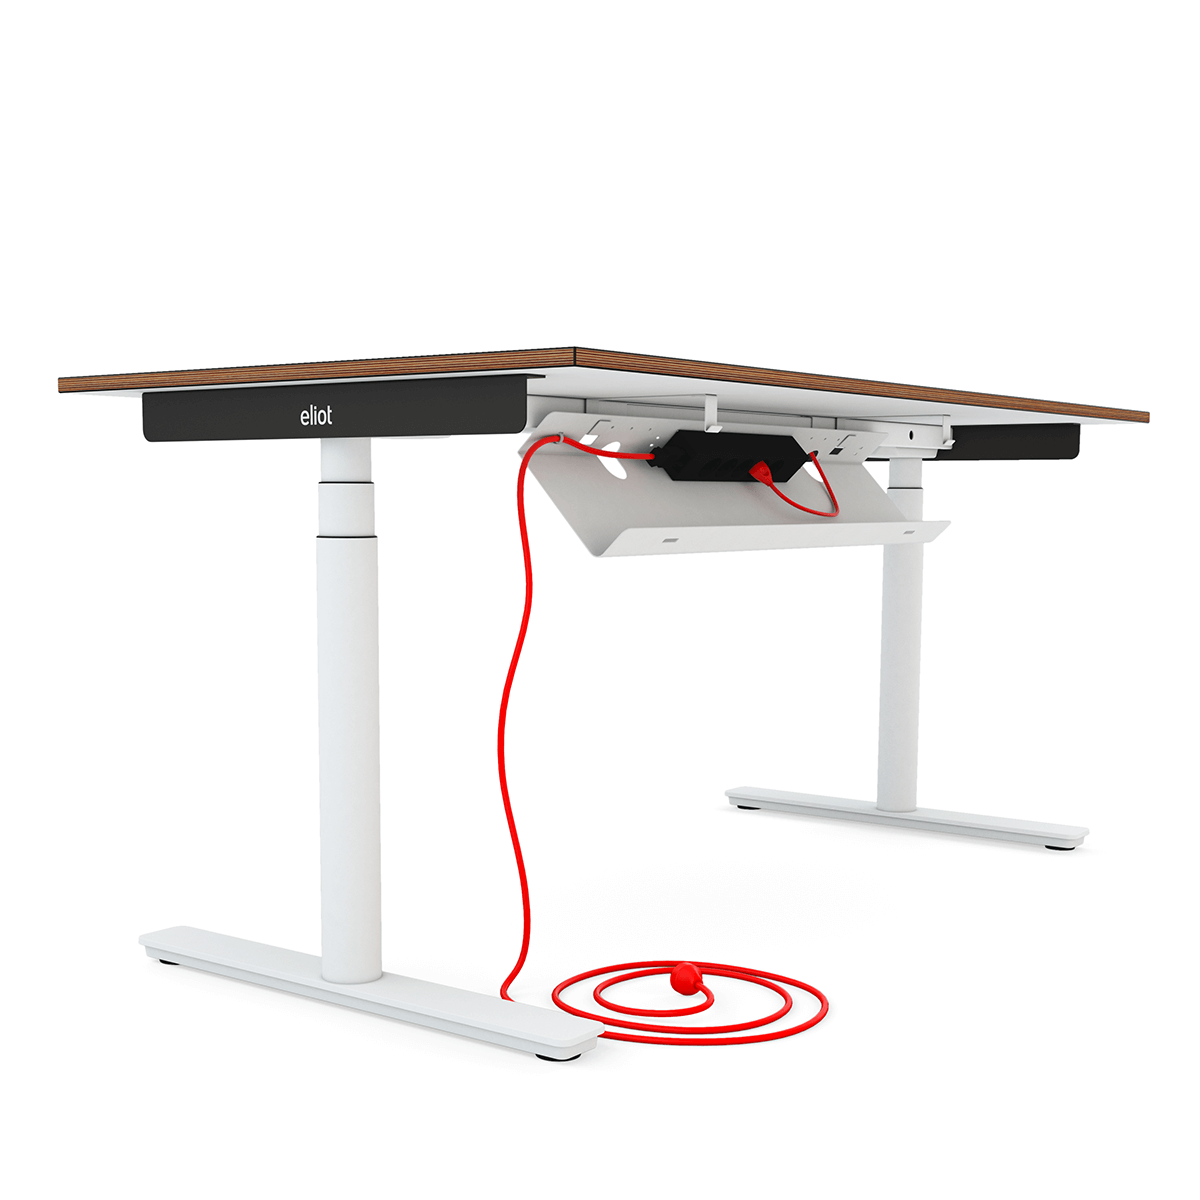 Höhenverstellbarer Schreibtisch Eliot mit aufgeklappter Kabelwanne und rotem Kabel freigestellt auf weißem Hintergrund